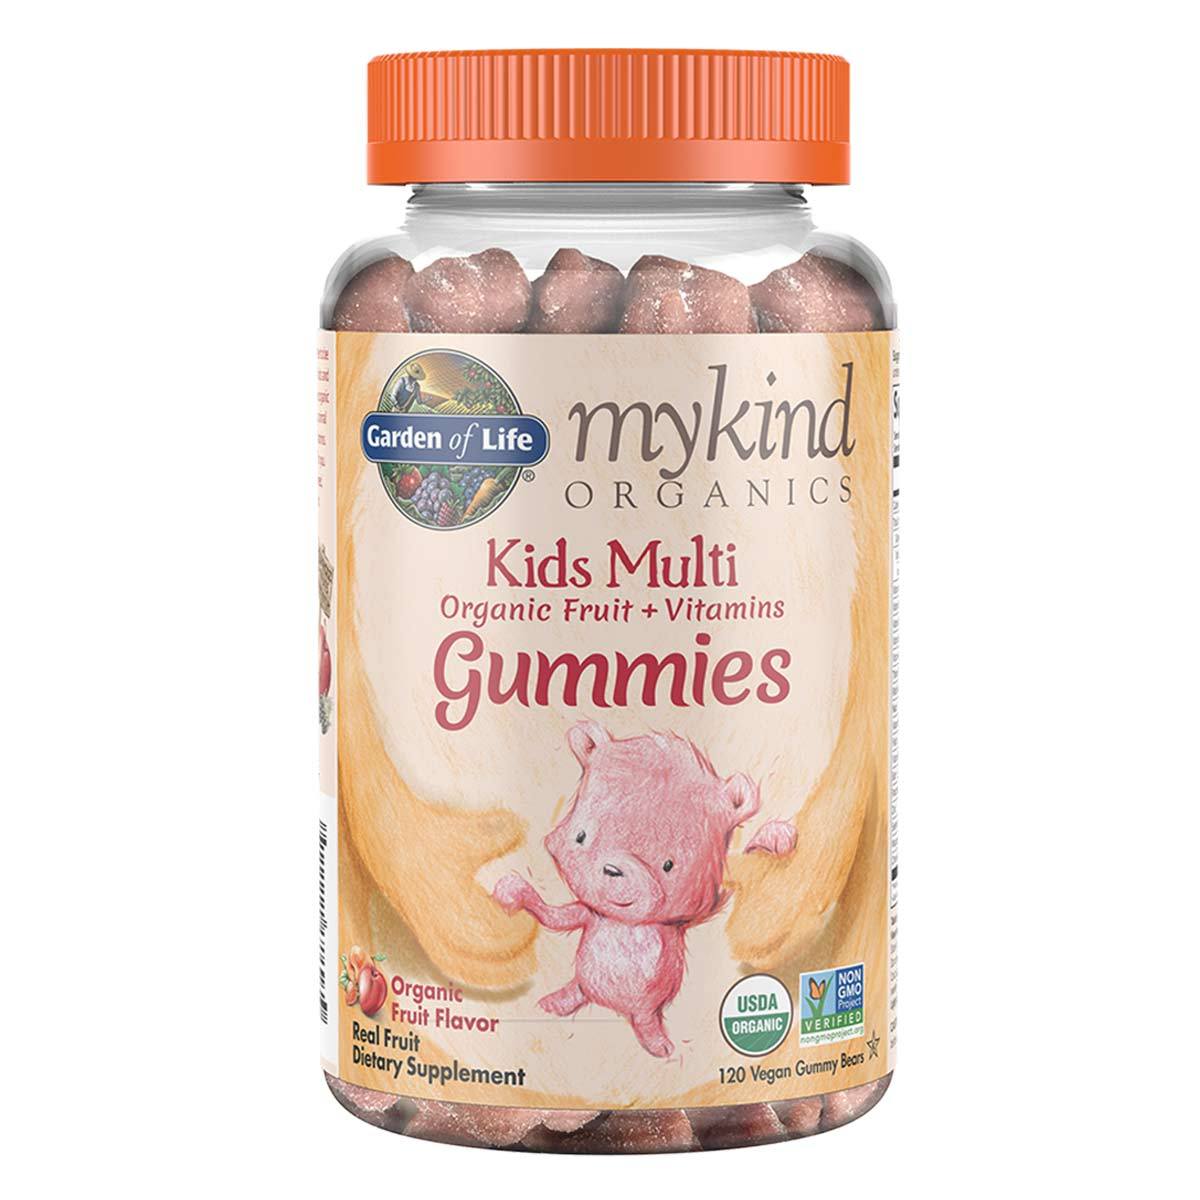 Primary image of mykind Organics Kids Multi Gummies